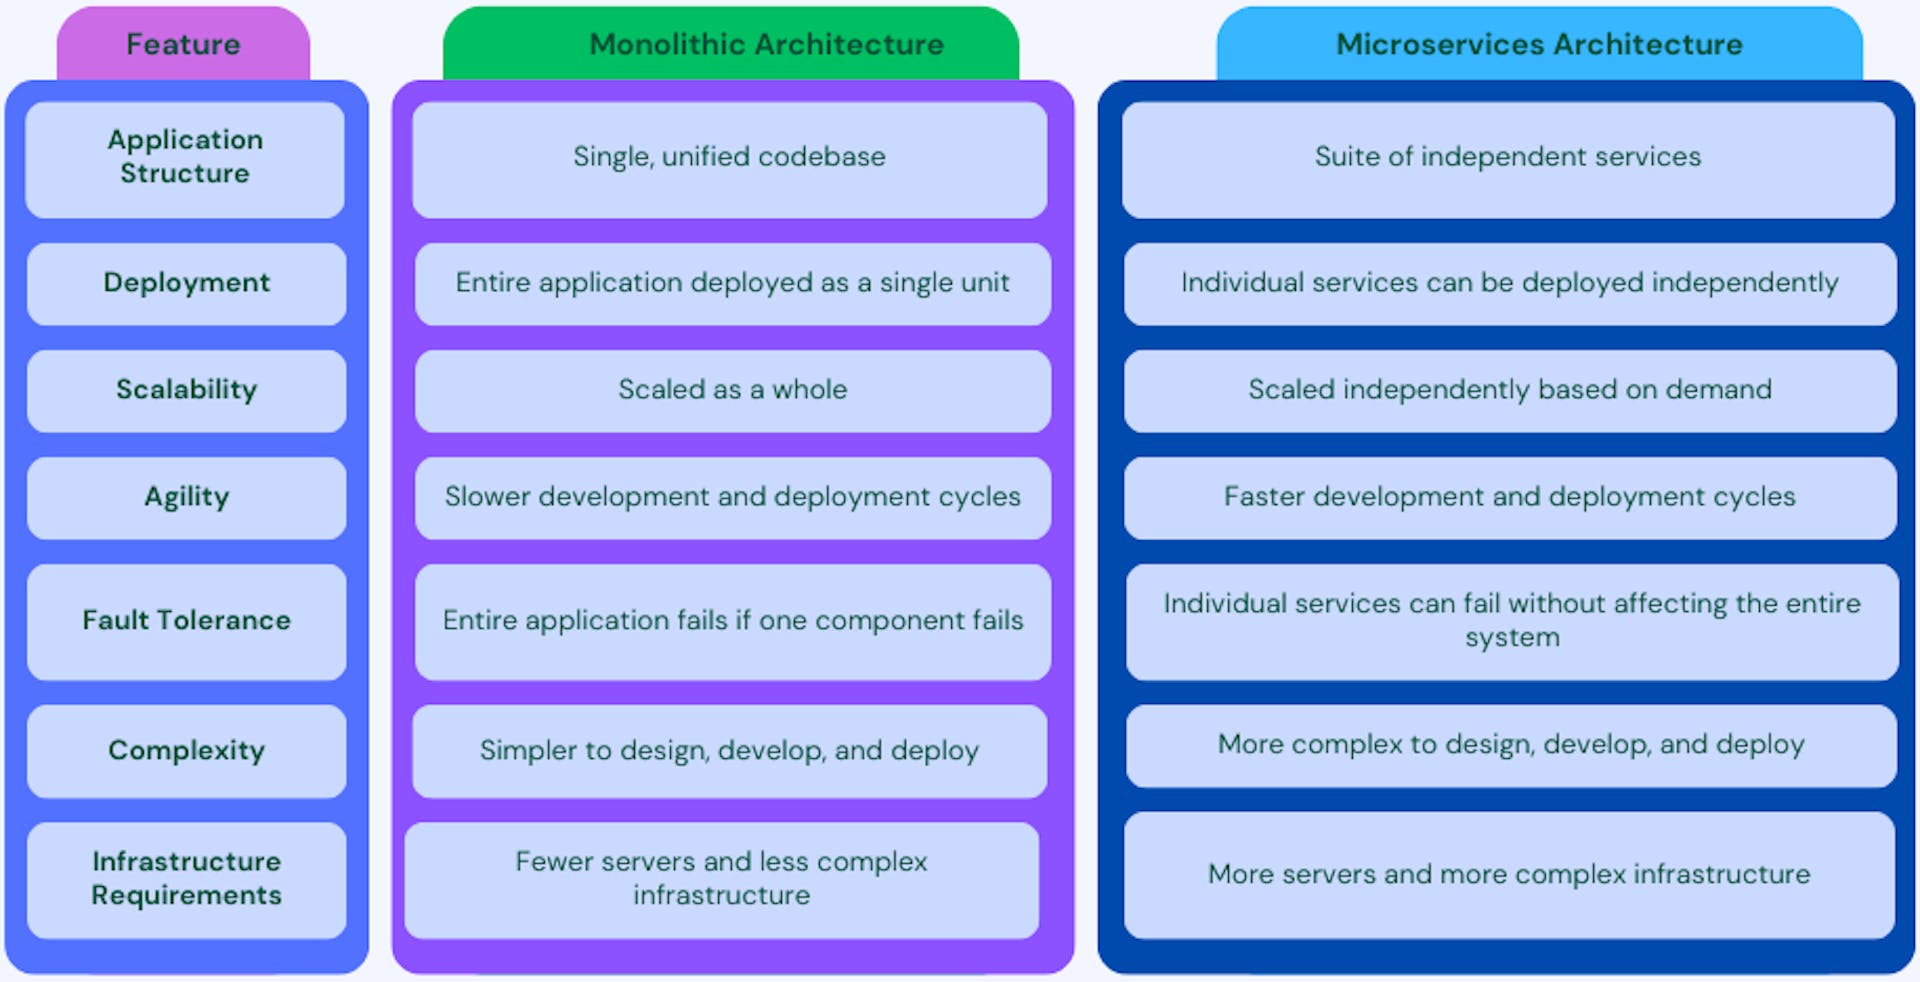 Figure: Monolithic vs. Microservices Architecture Comparision